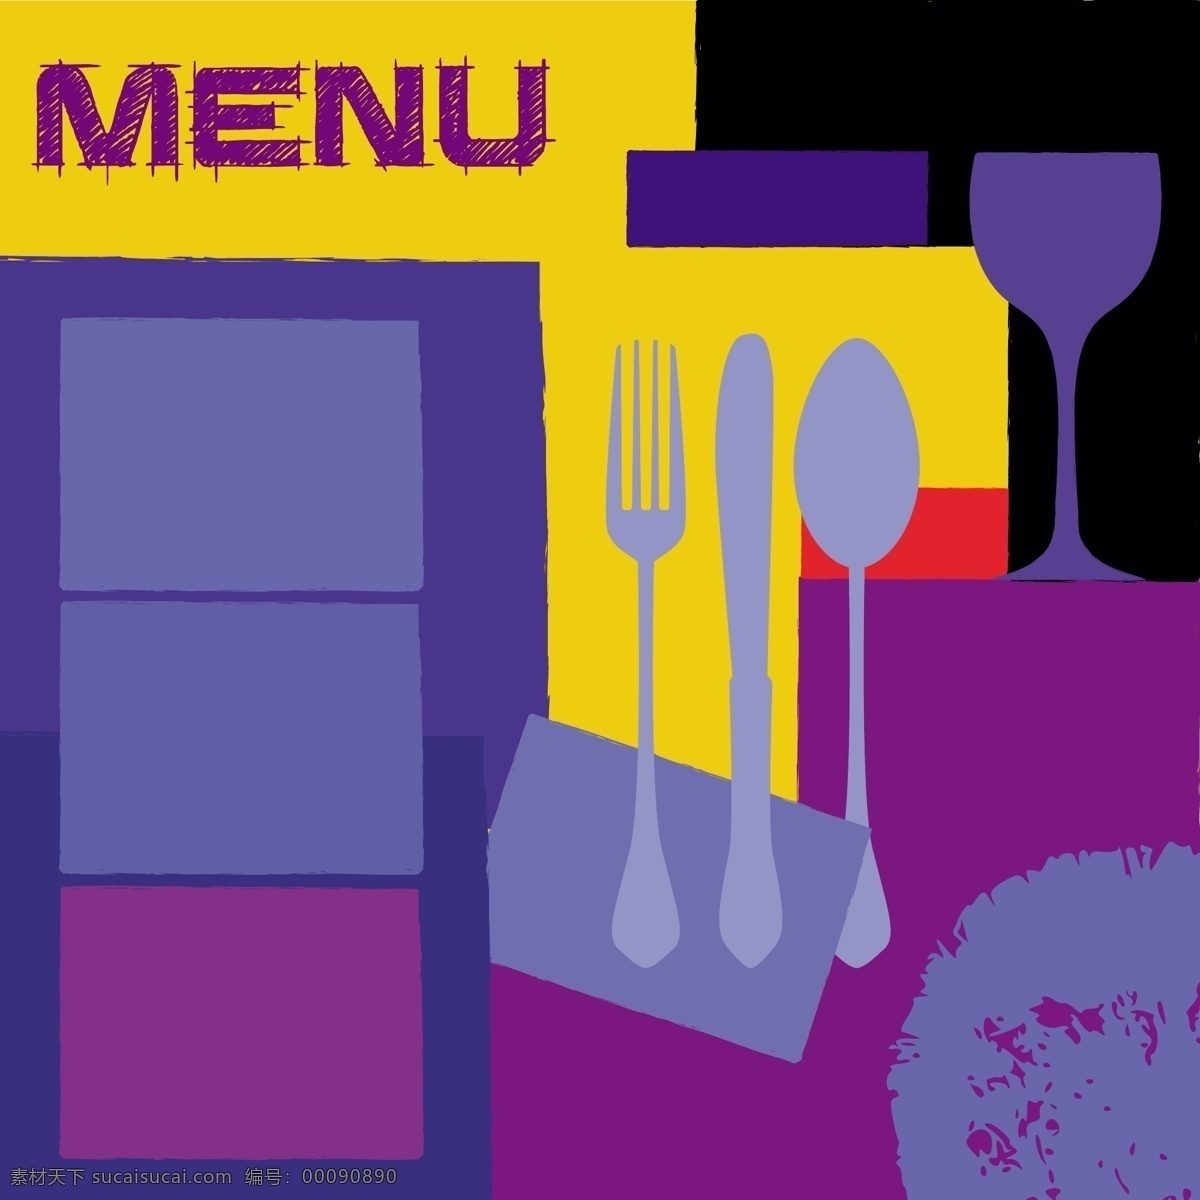 矢量 创意 菜单 模板 餐具 餐厅 创意菜单 创意设计 模板素材 设计矢量 矢量图